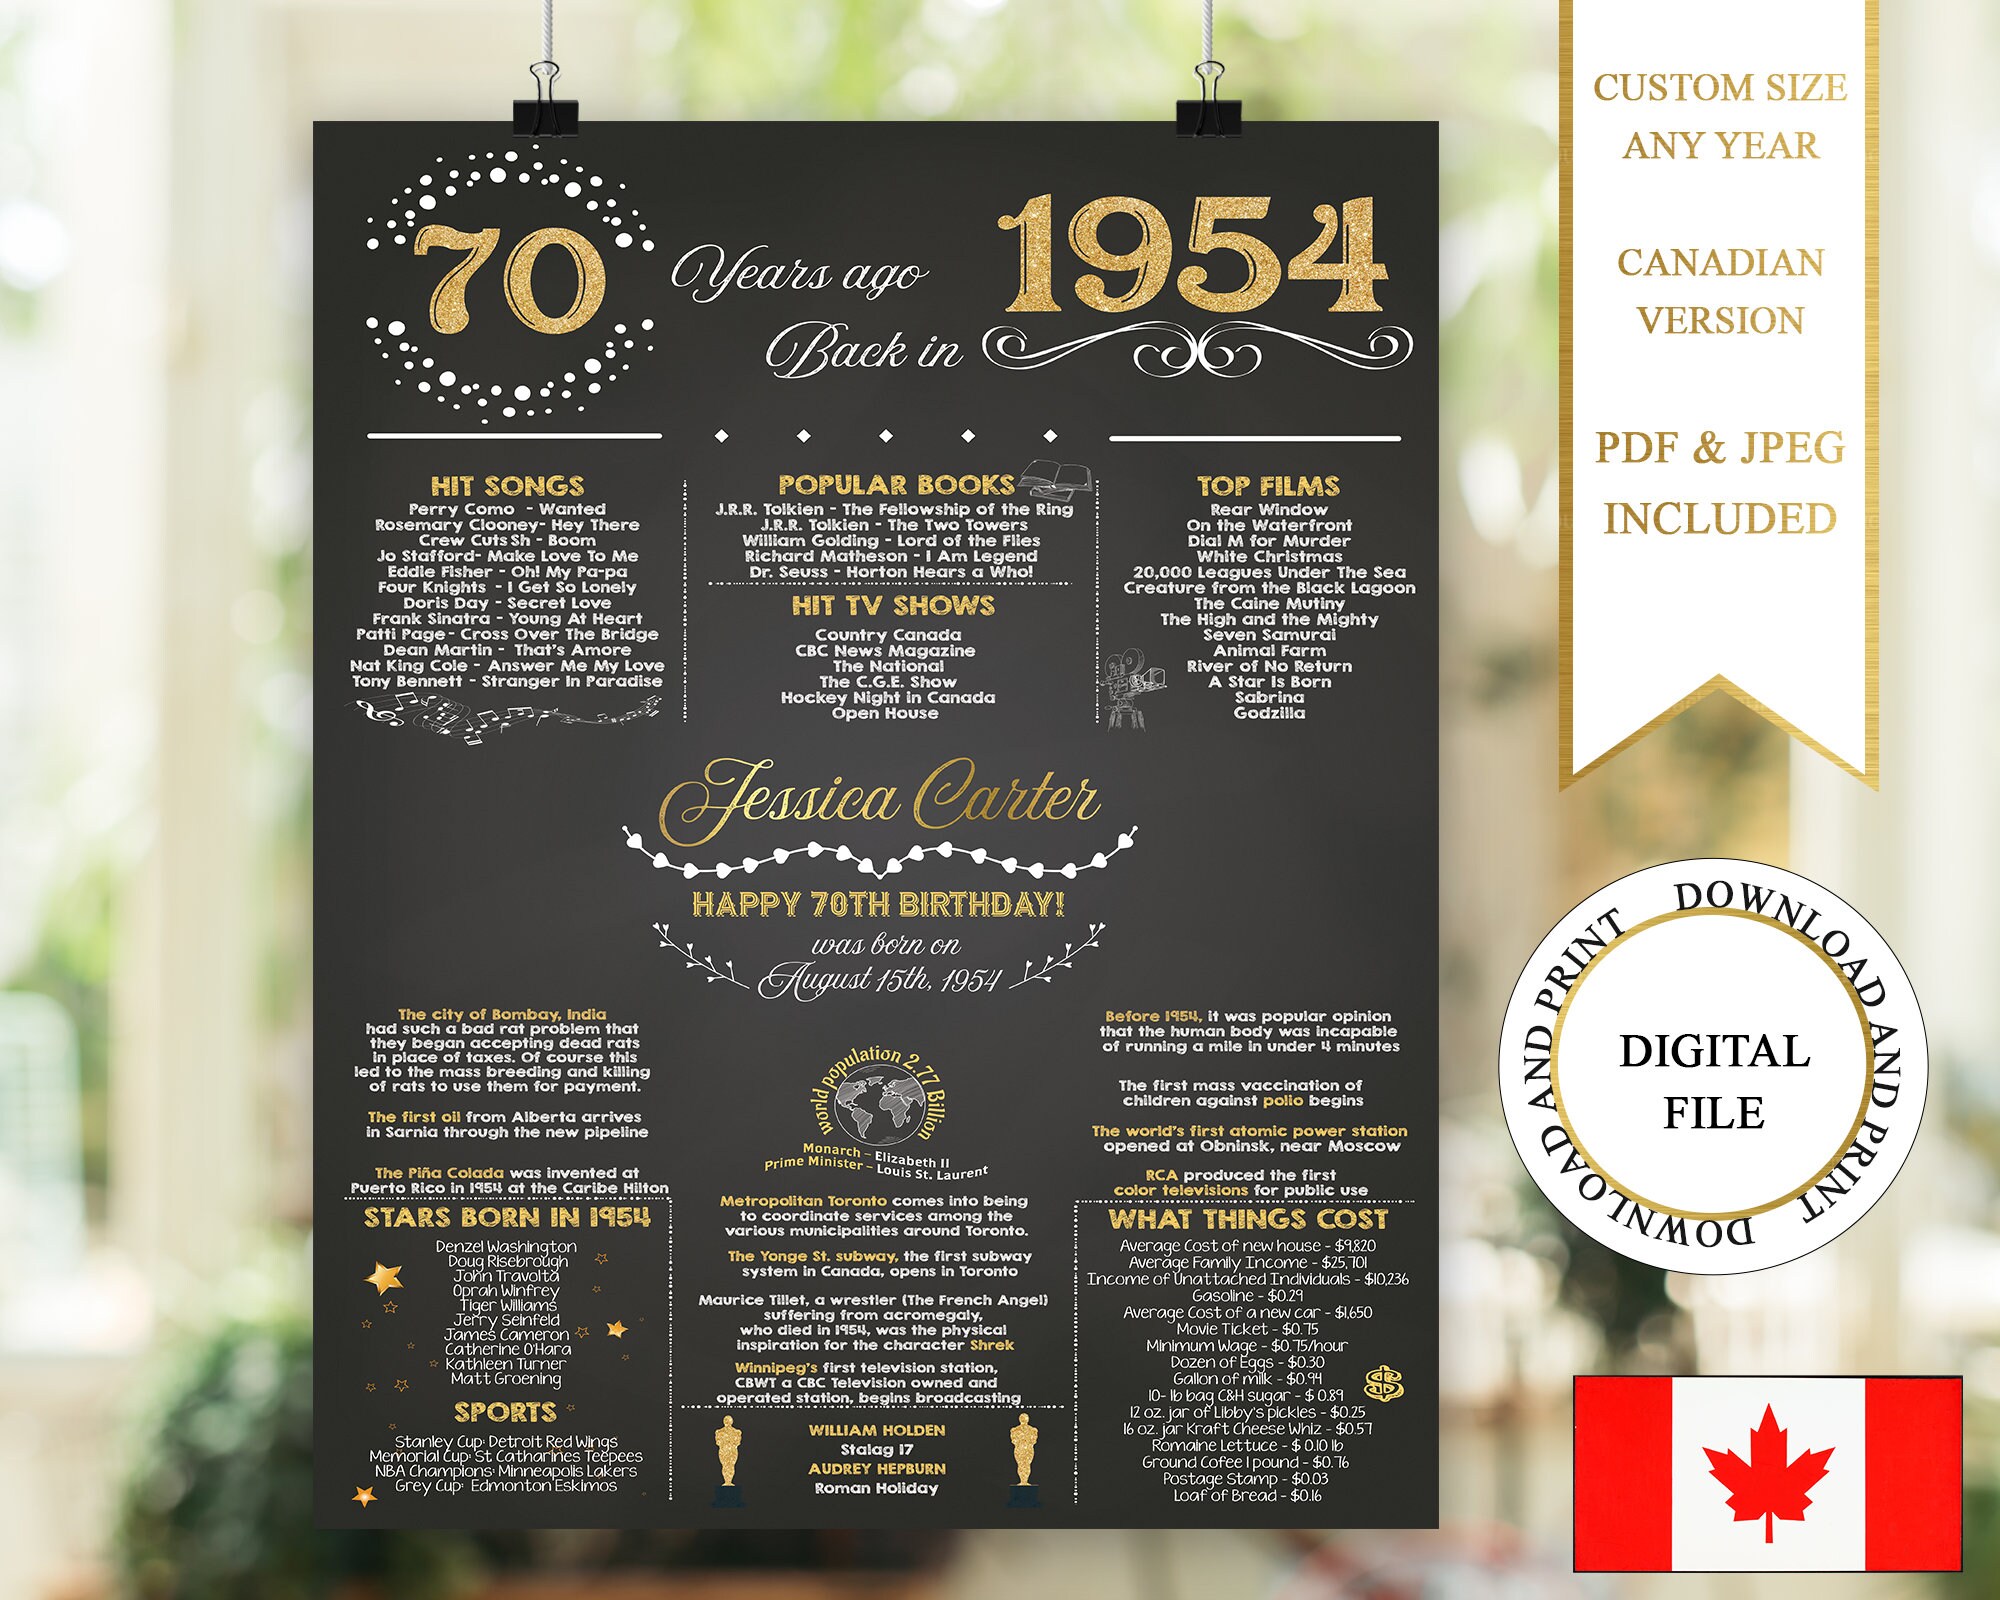 70 Years Ago Canada -  Canada